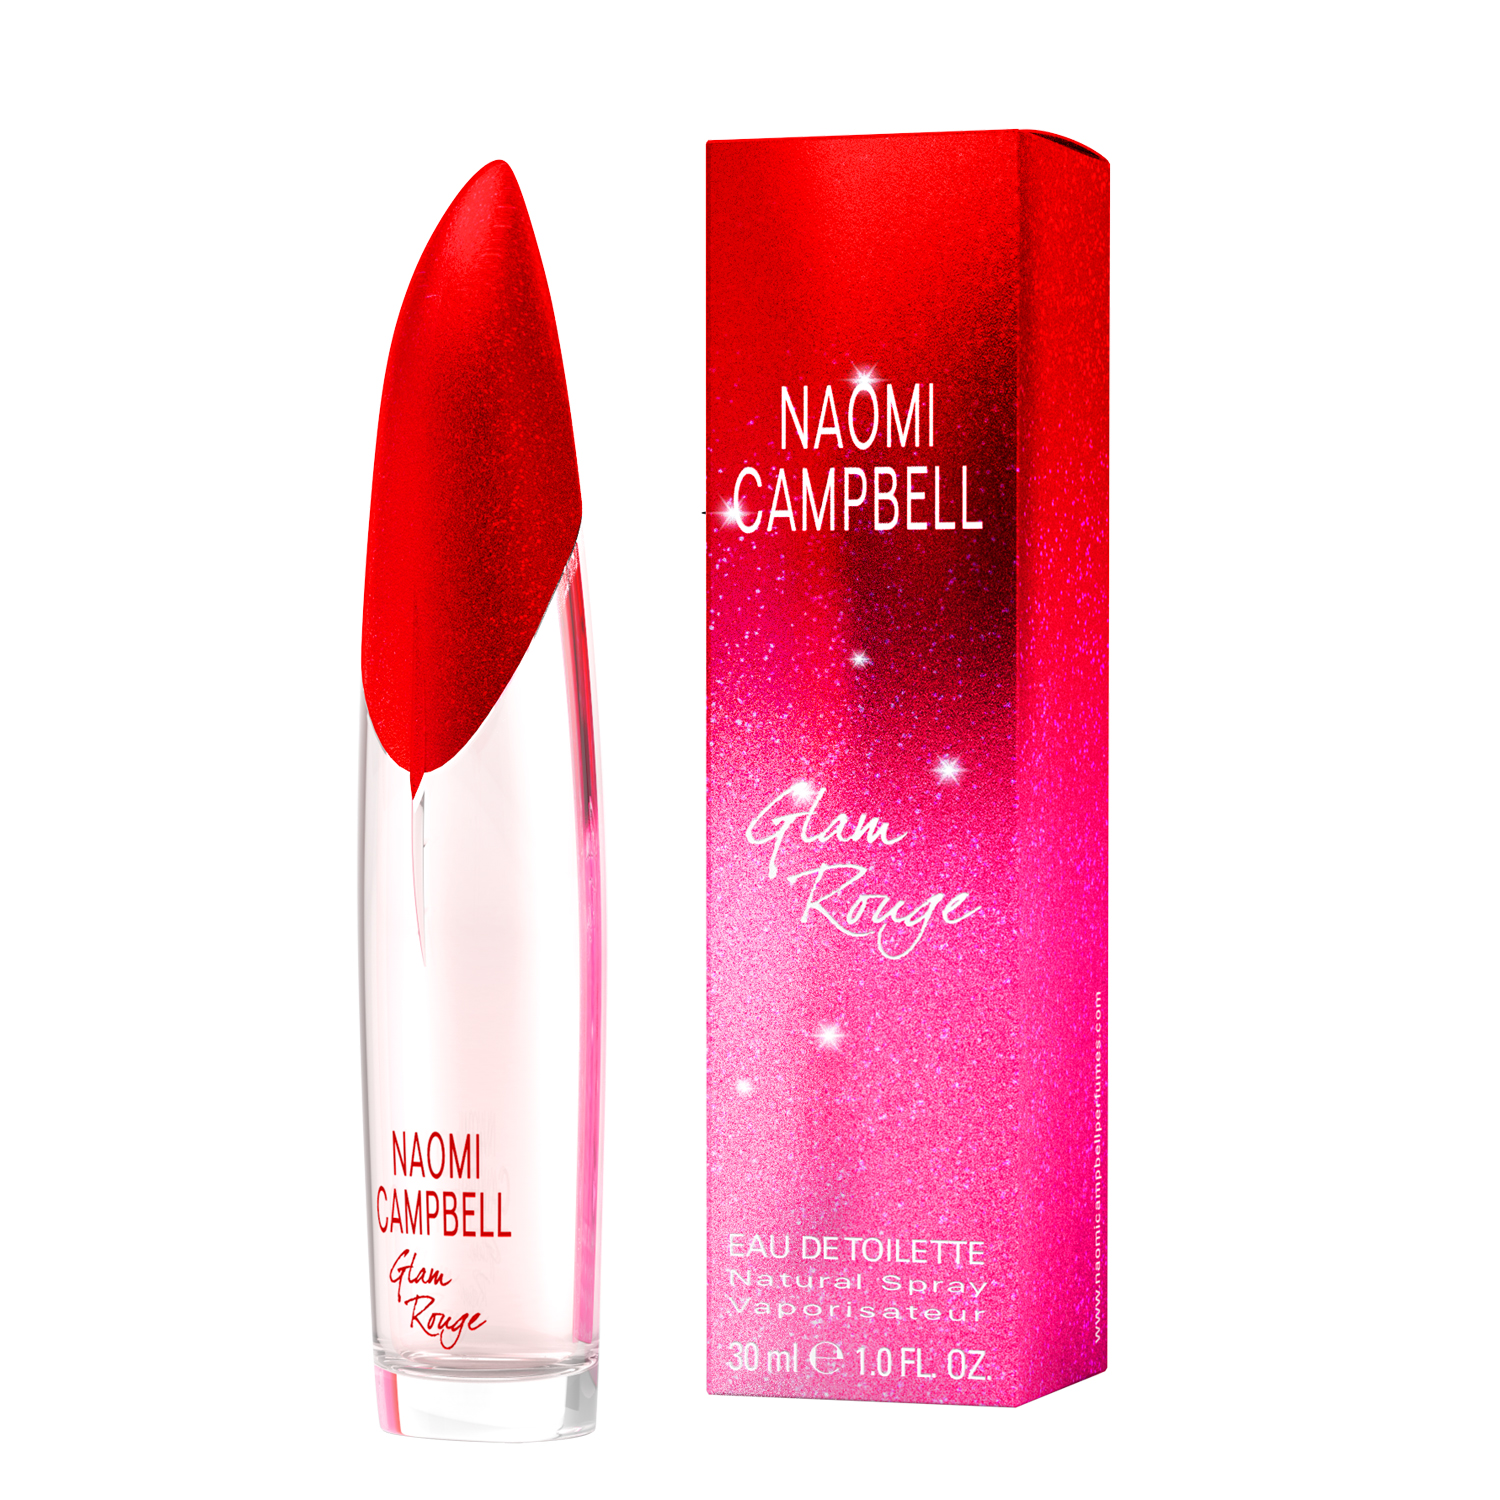 Naomi Campbell Glam Rouge Eau de Toilette 30ml